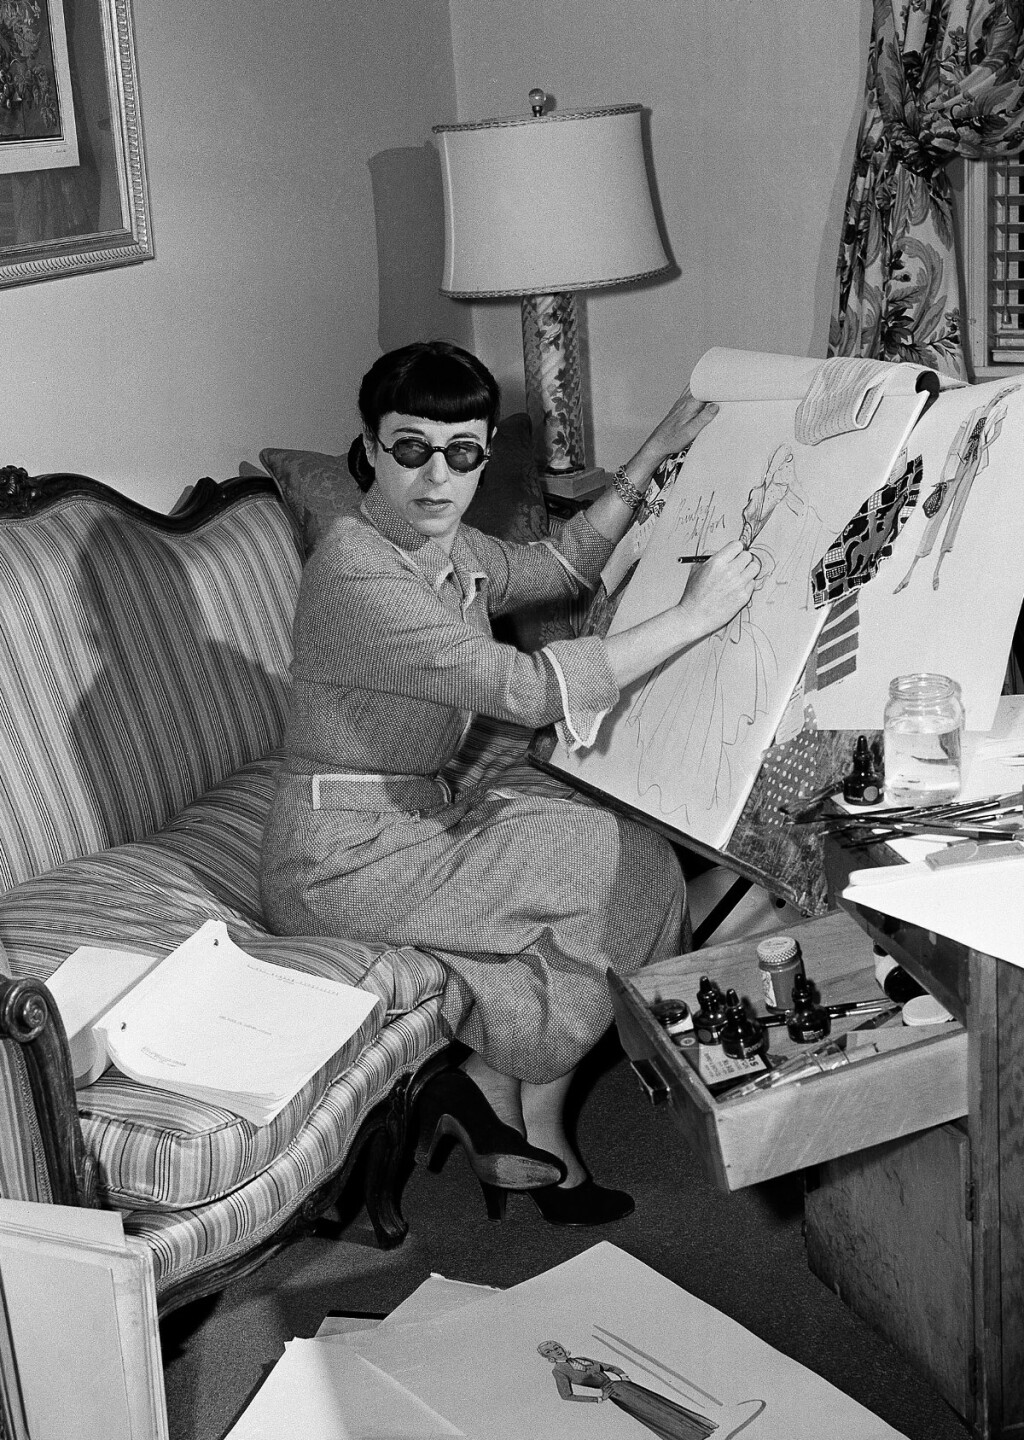 Kostimografkinja Edith Head, najnagrađivanija žena u povijesti Oscara s osam osvojenih kipića